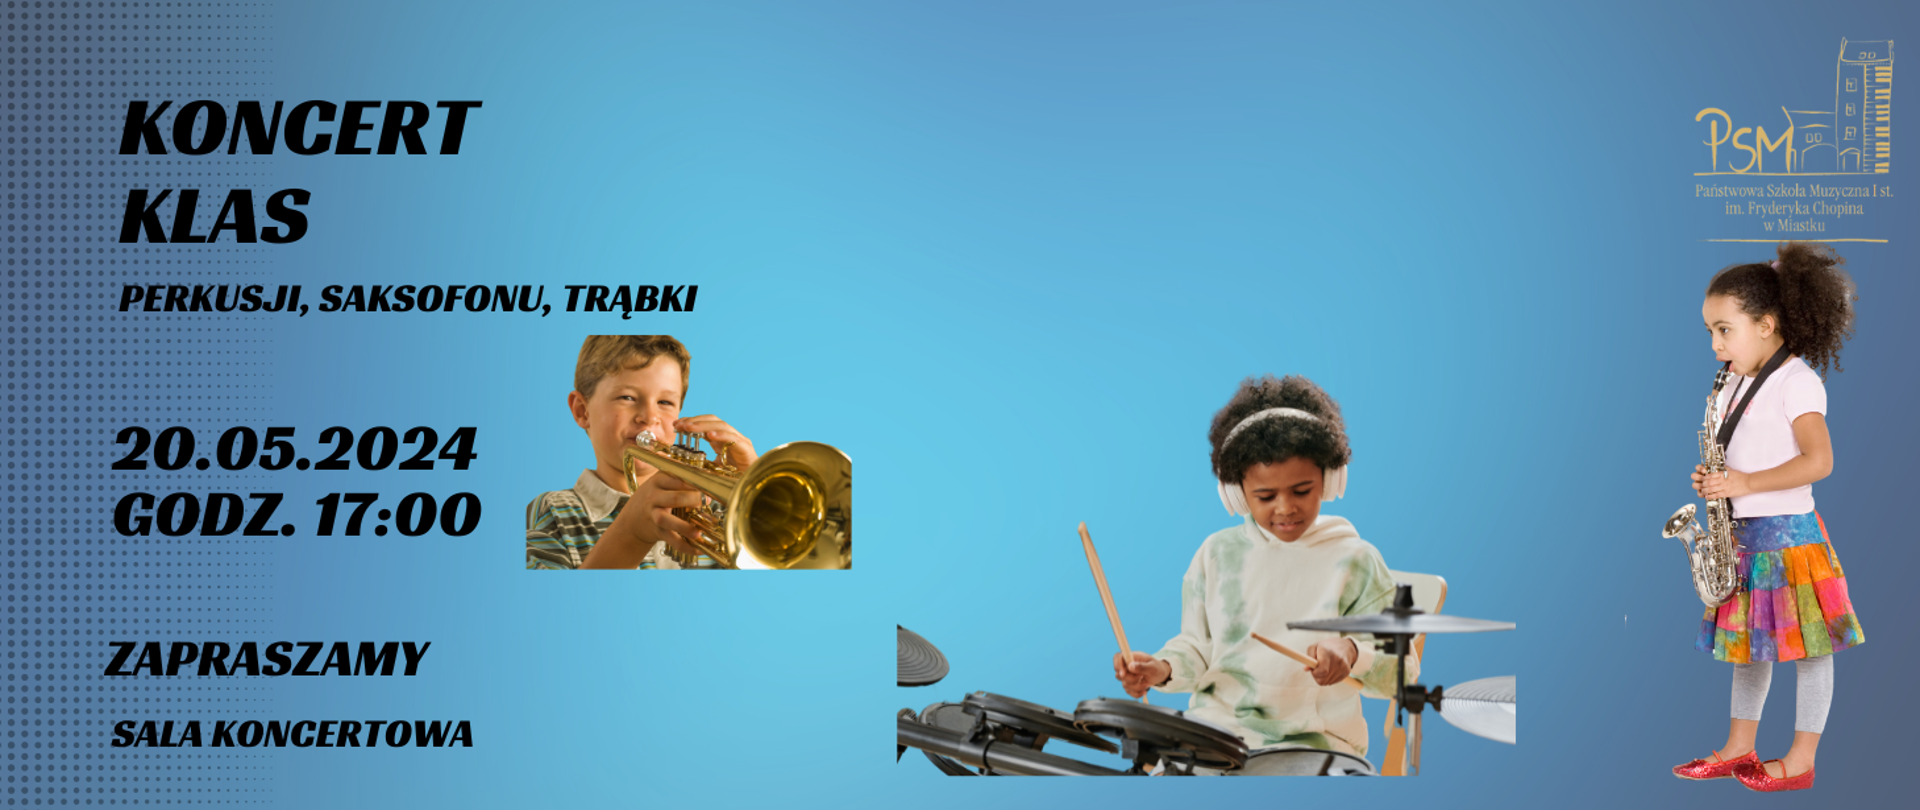 Grafika informująca o koncercie uczniów klas perkusji, saksofonu, trąbki 20 maja 2024 o godz. 17:00 w sali koncertowej naszej szkoły.